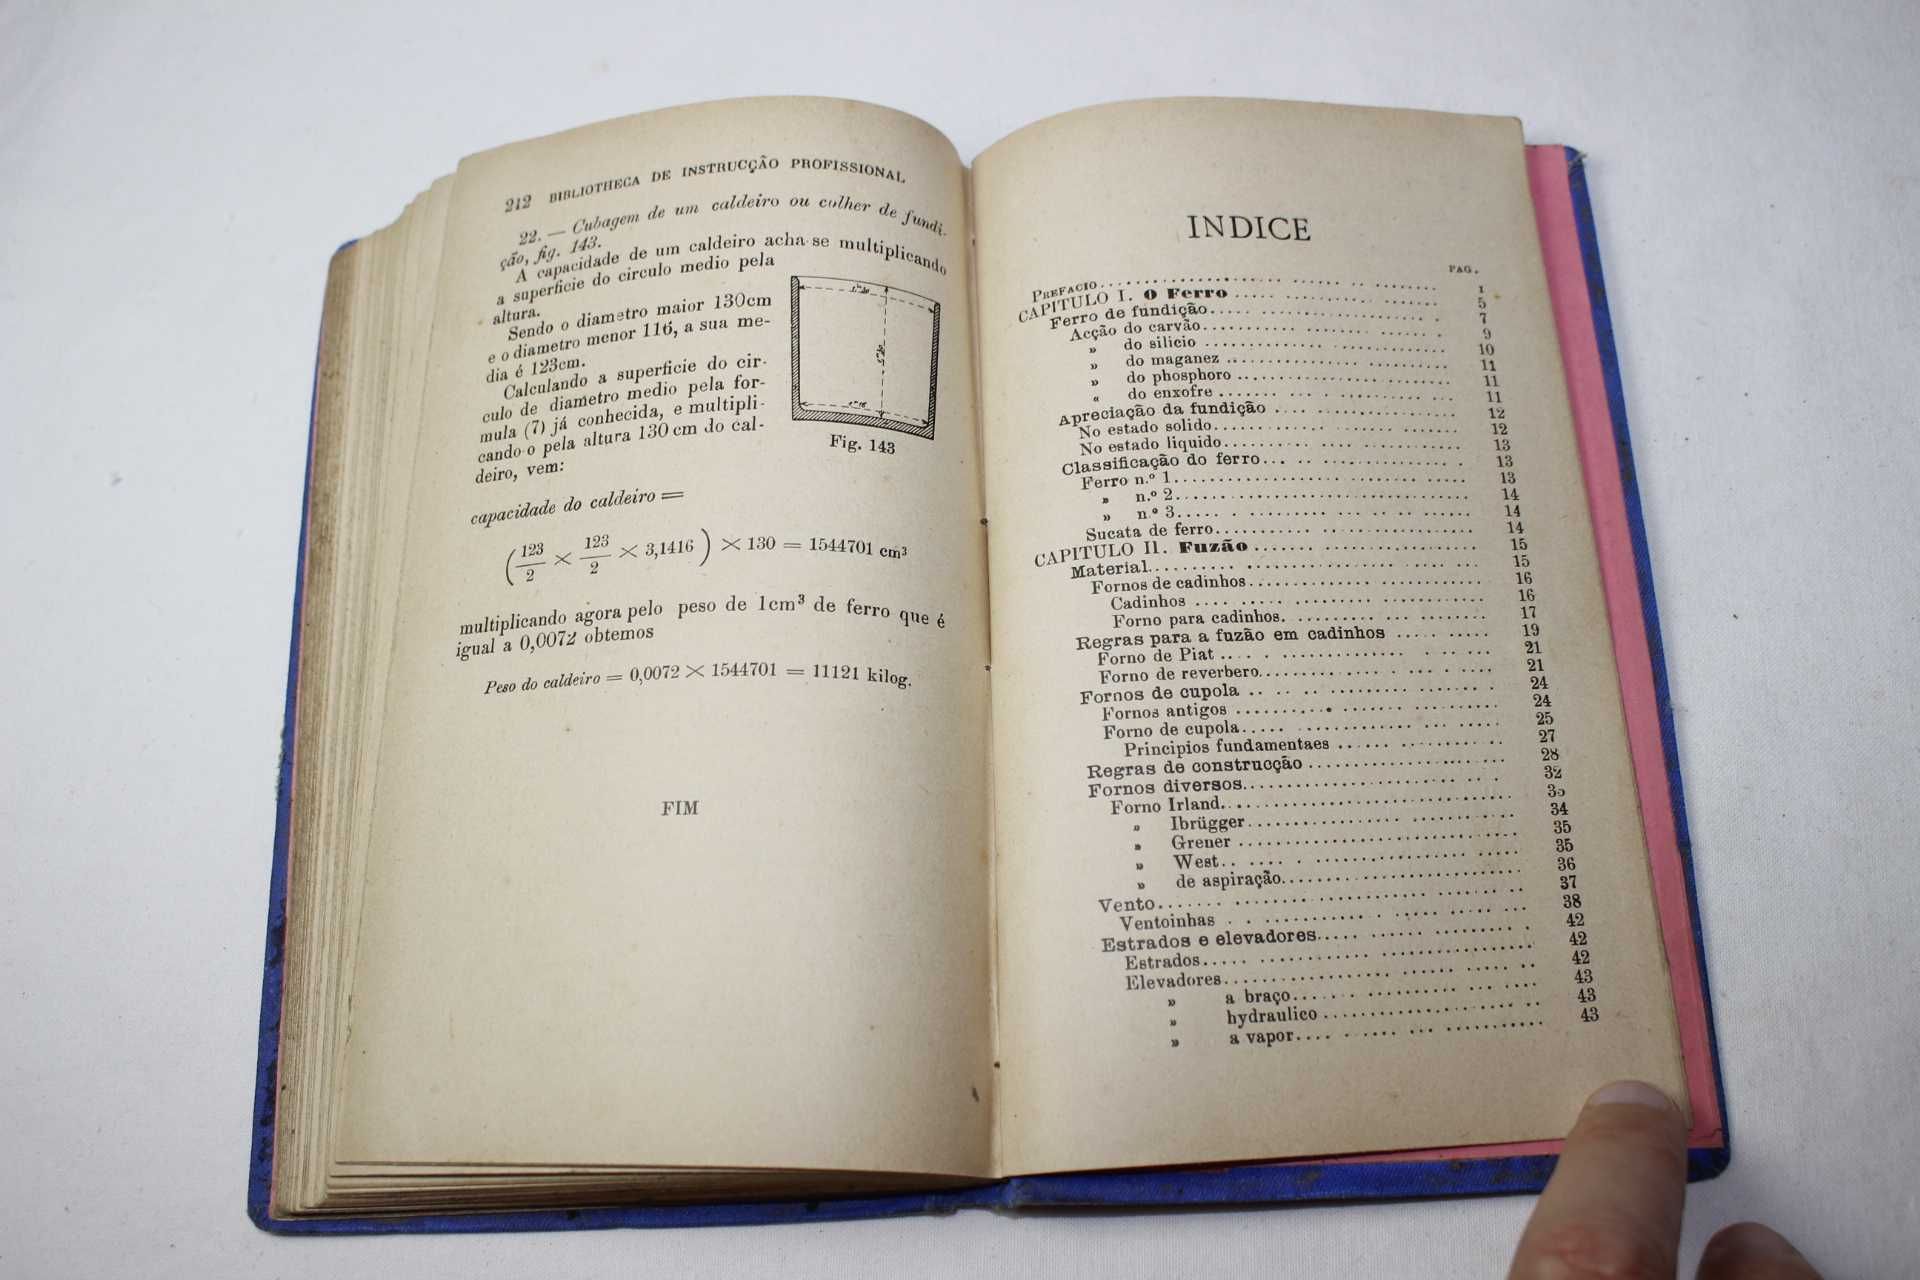 Livro antigo - Manual do Fundidor - Thomaz Bordallo Pinheiro - Raro